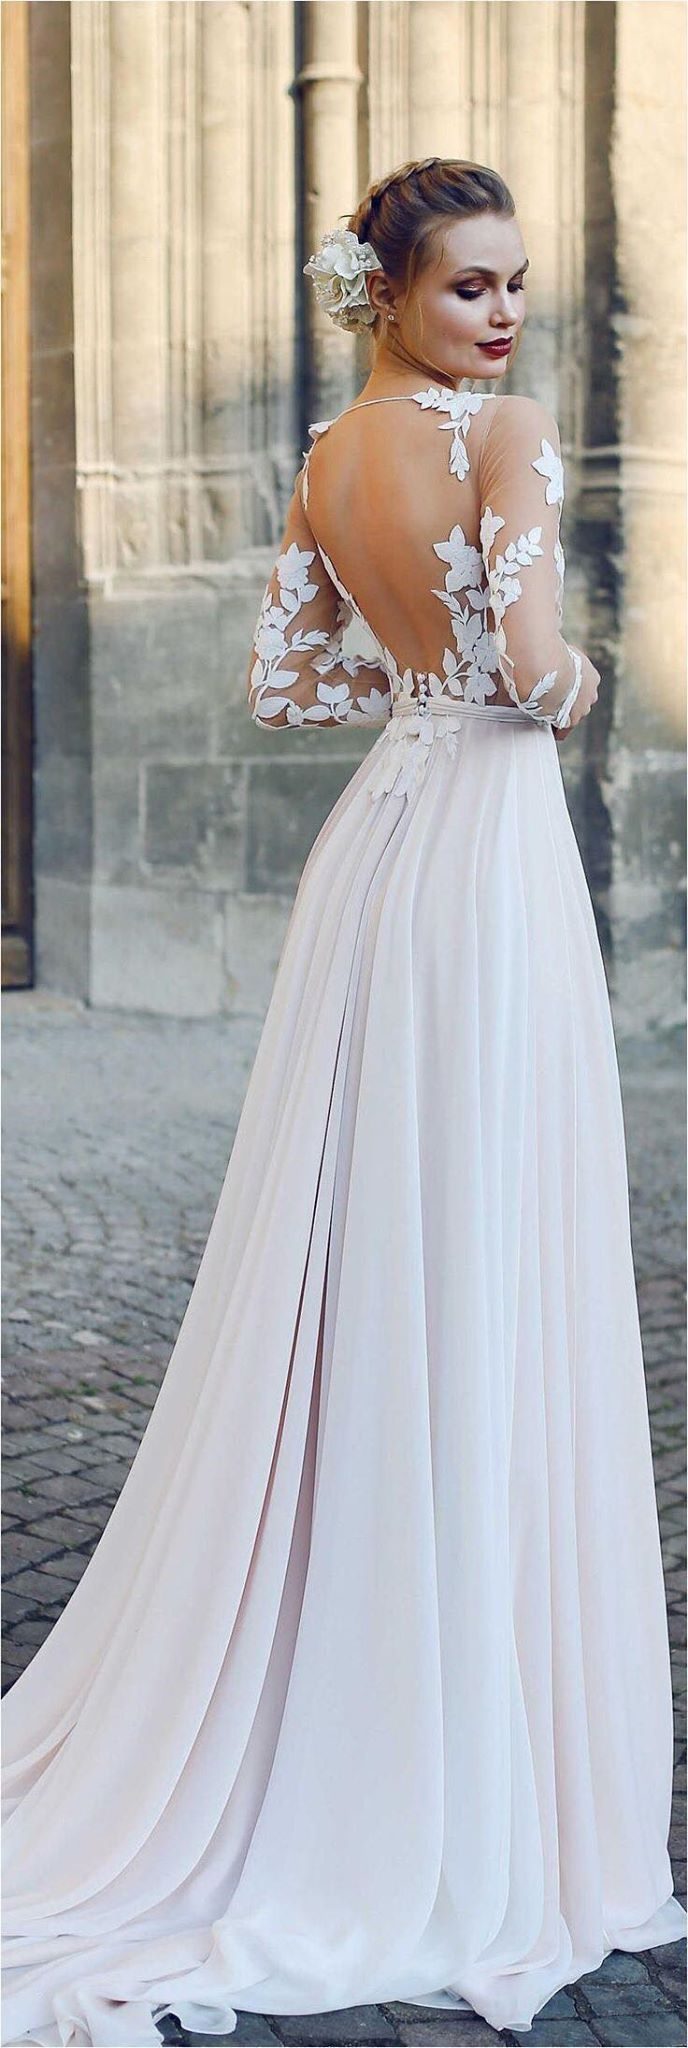 10 роскошных свадебных платьев, которые любую невесту превратят в принцессу 38